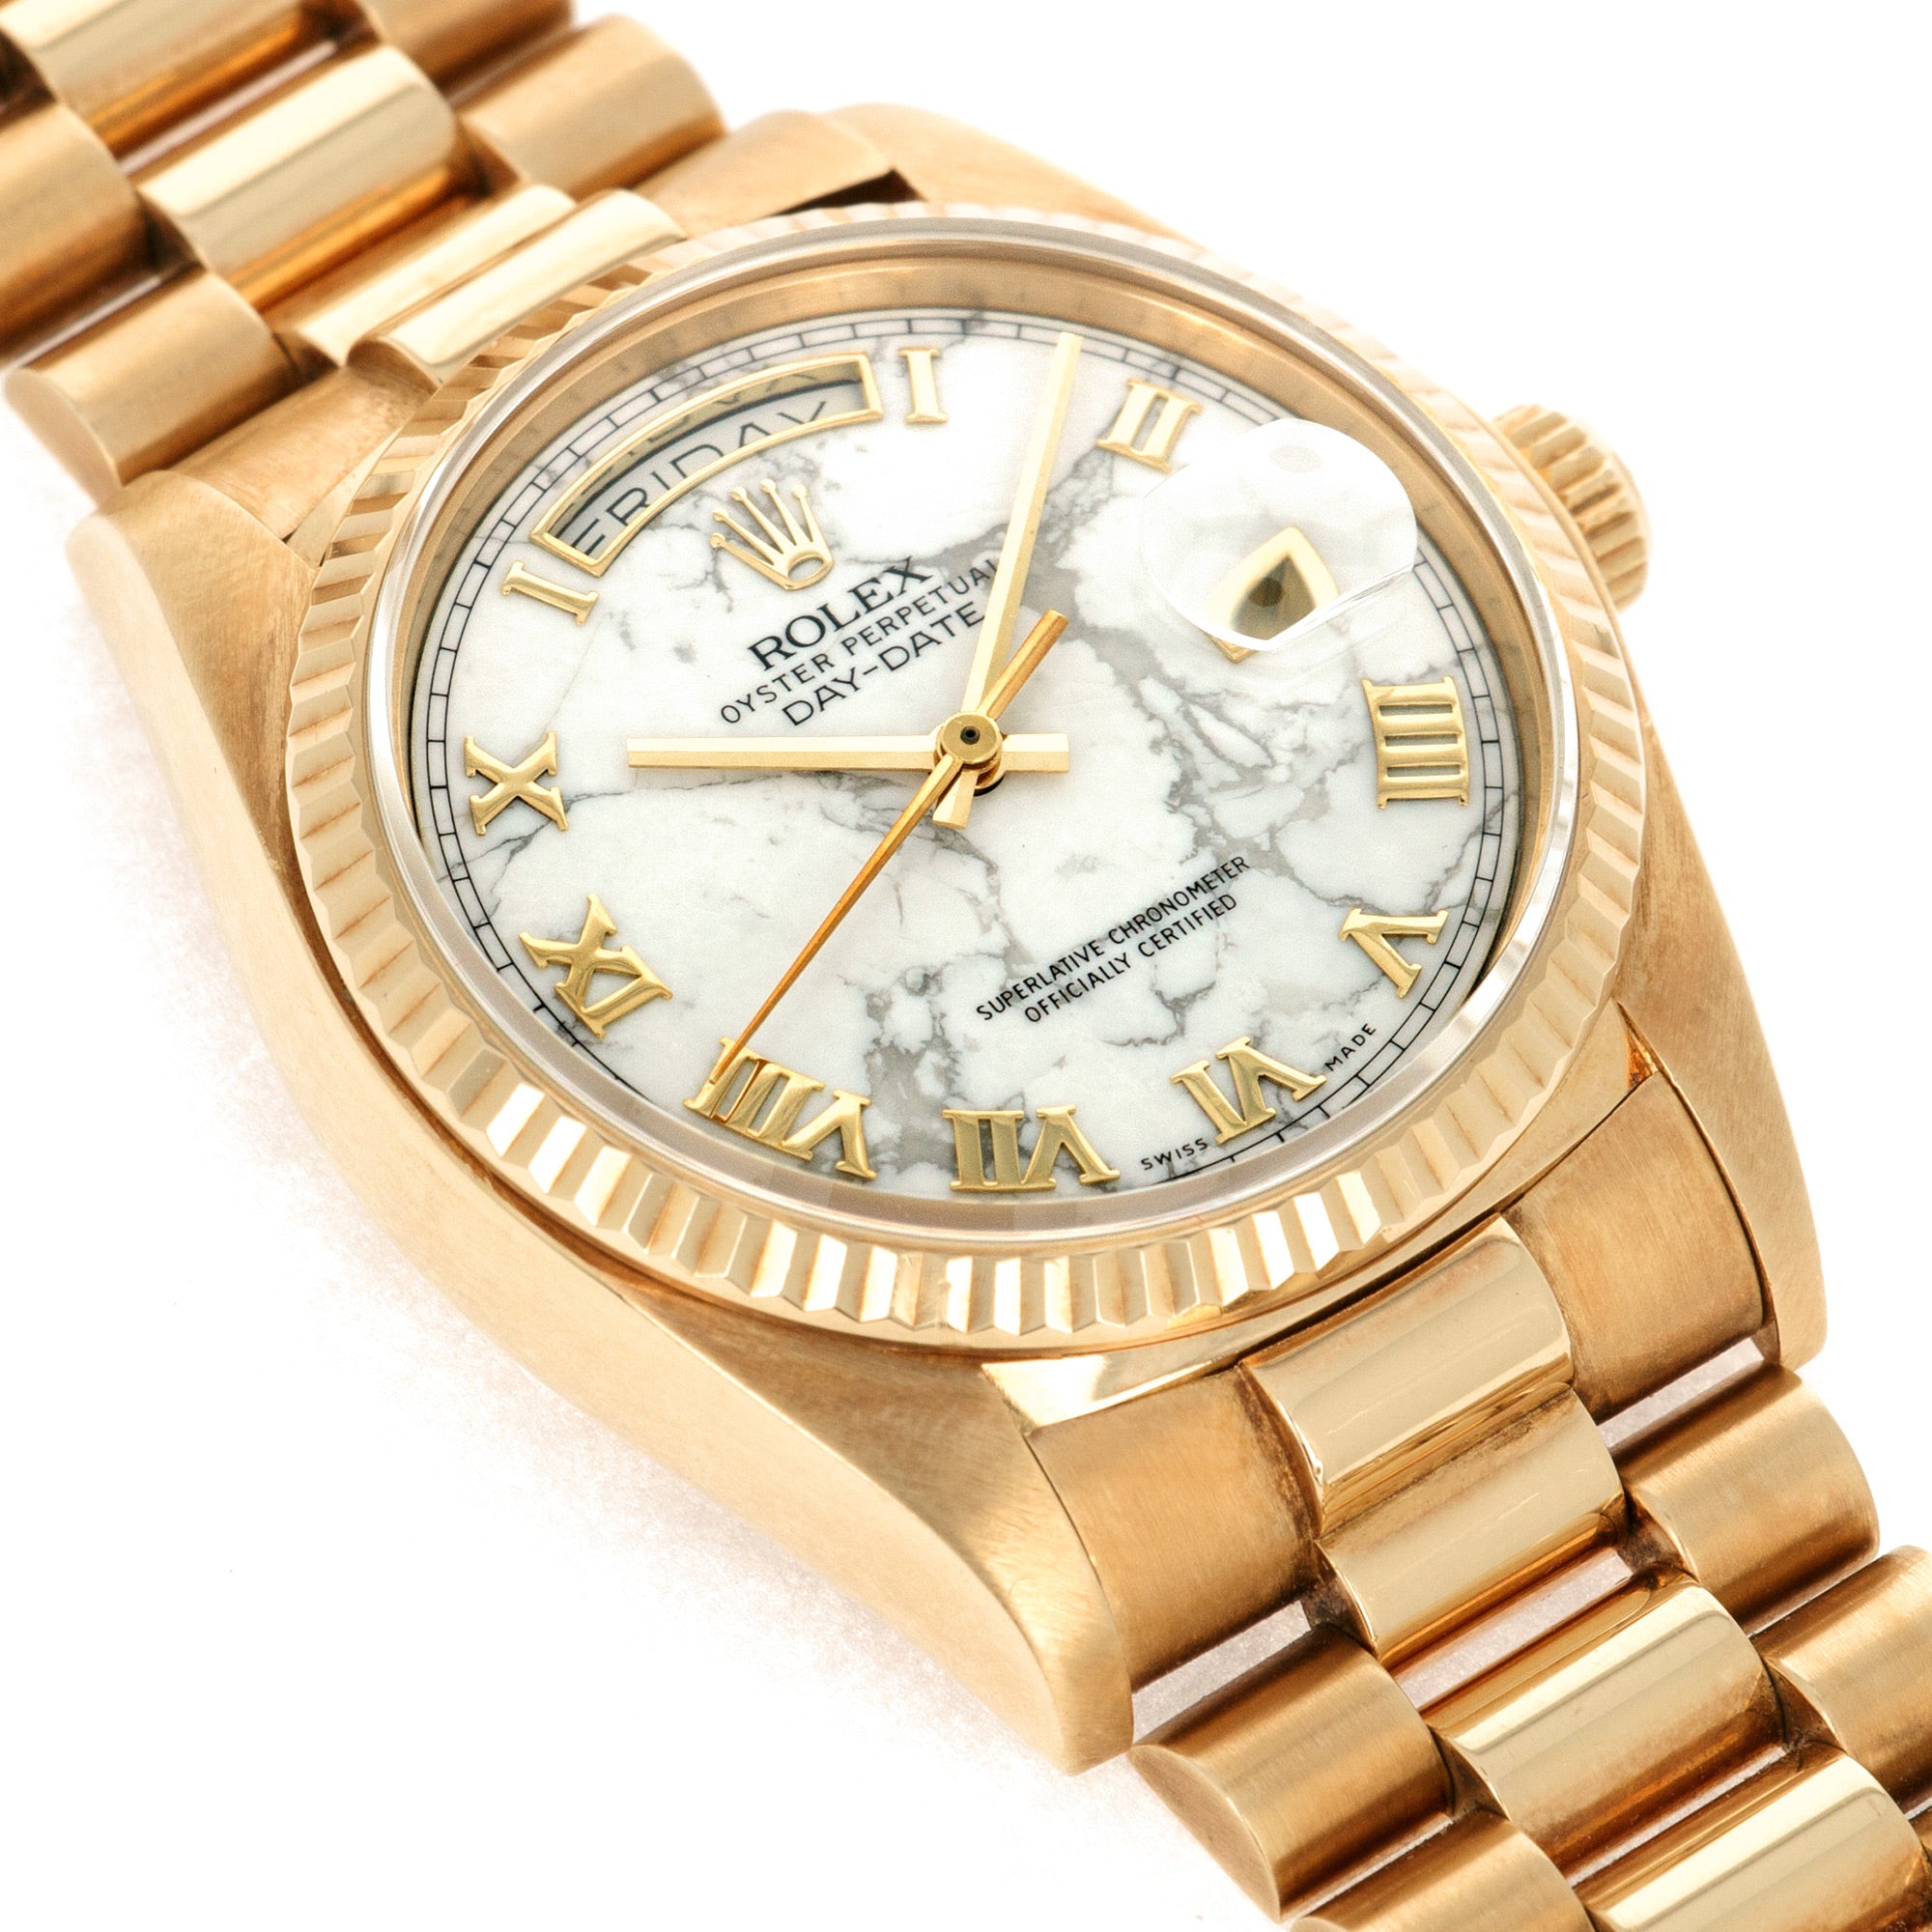 Rolex - Rolex Yellow Gold Day Date Howlite Watch Ref. 18038 - The Keystone Watches